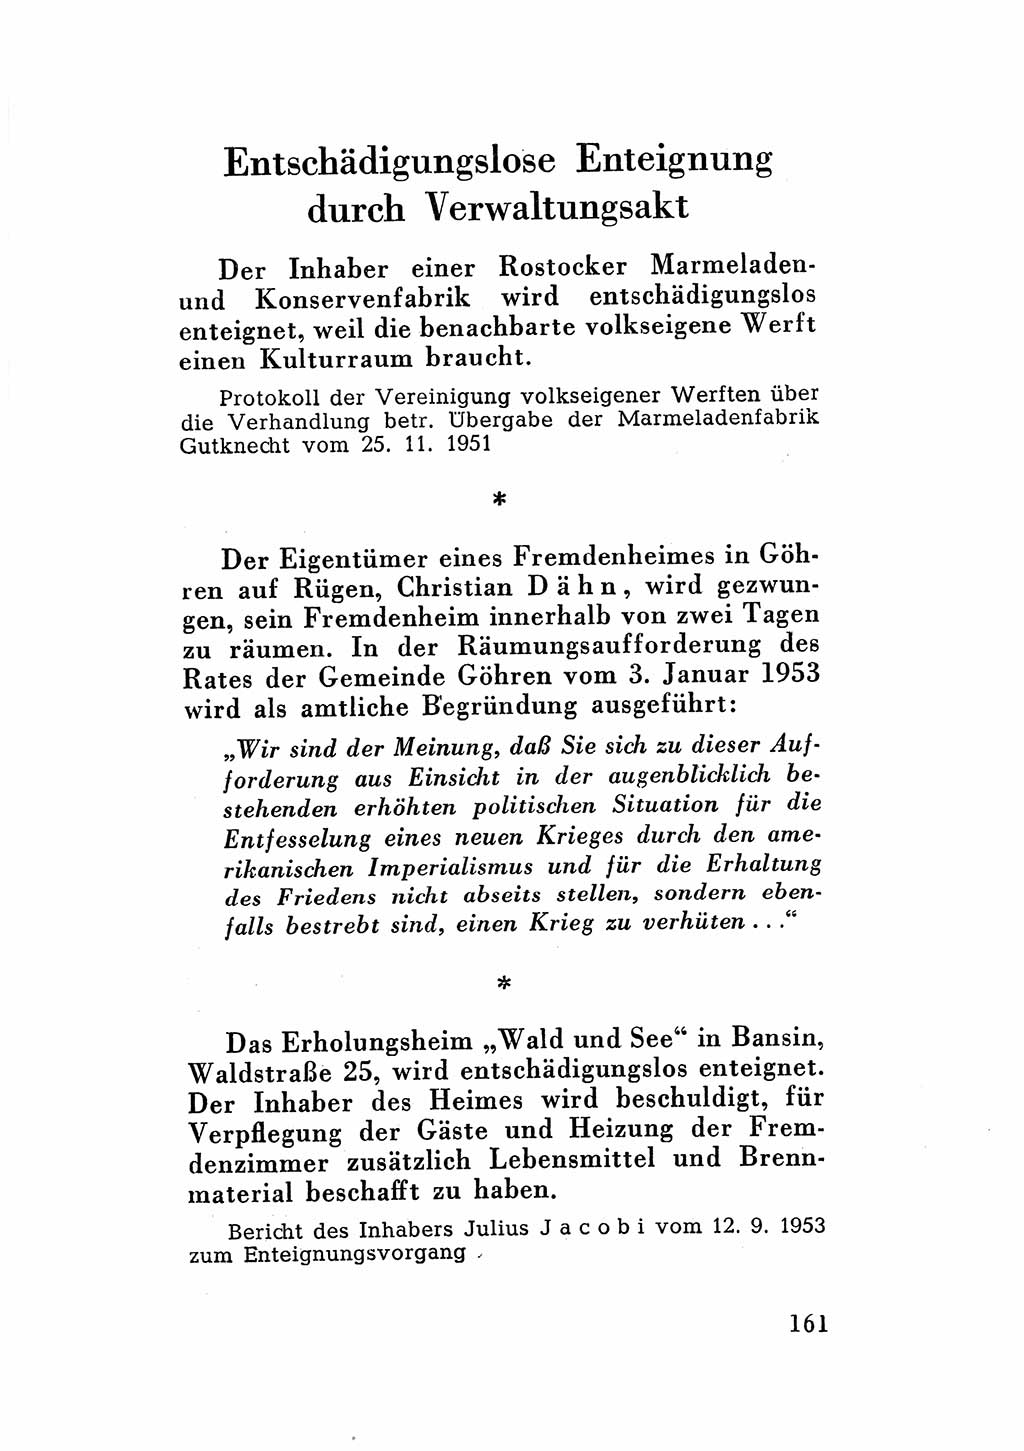 Katalog des Unrechts, Untersuchungsausschuß Freiheitlicher Juristen (UfJ) [Bundesrepublik Deutschland (BRD)] 1956, Seite 161 (Kat. UnR. UfJ BRD 1956, S. 161)